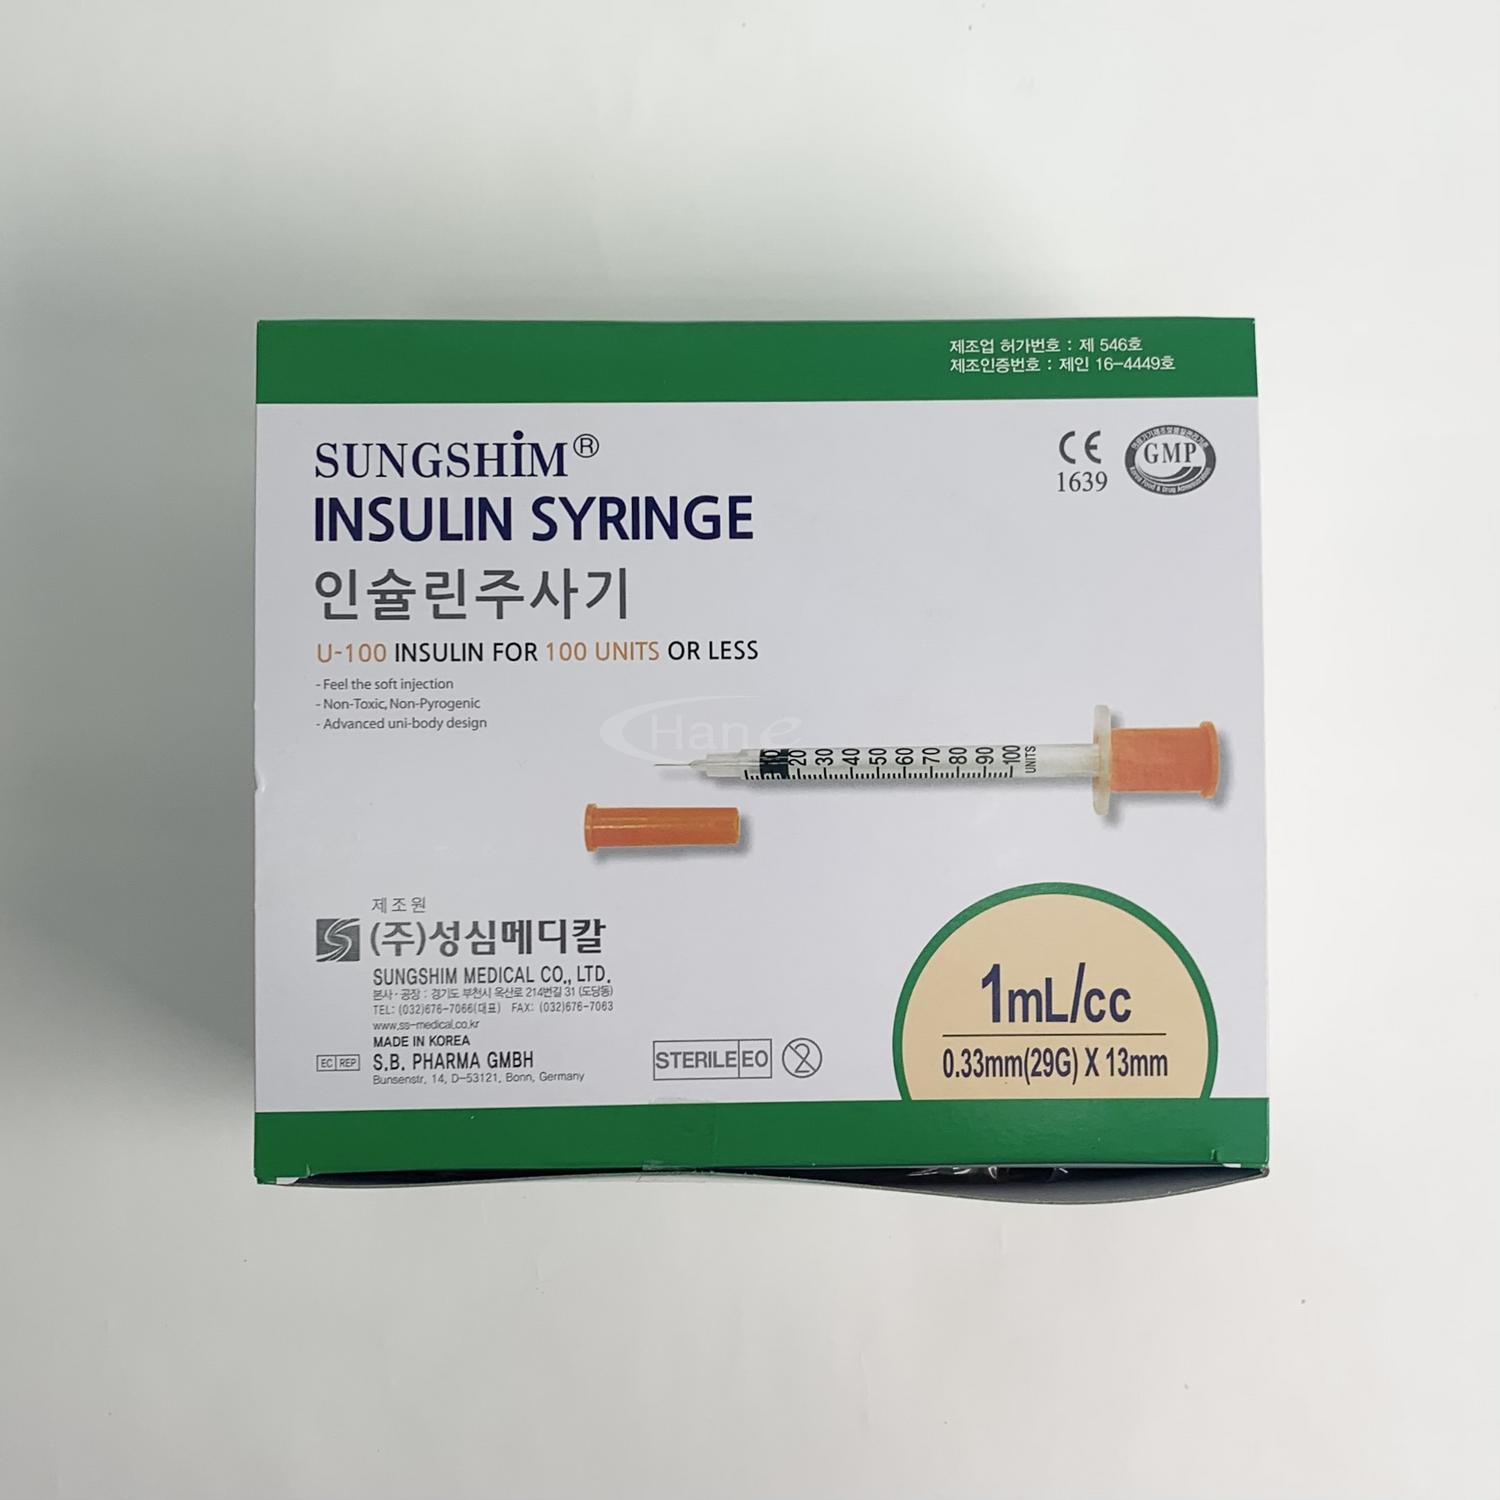 [성심]인슐린주사기 (1ml 29G*13mm 봉침용)